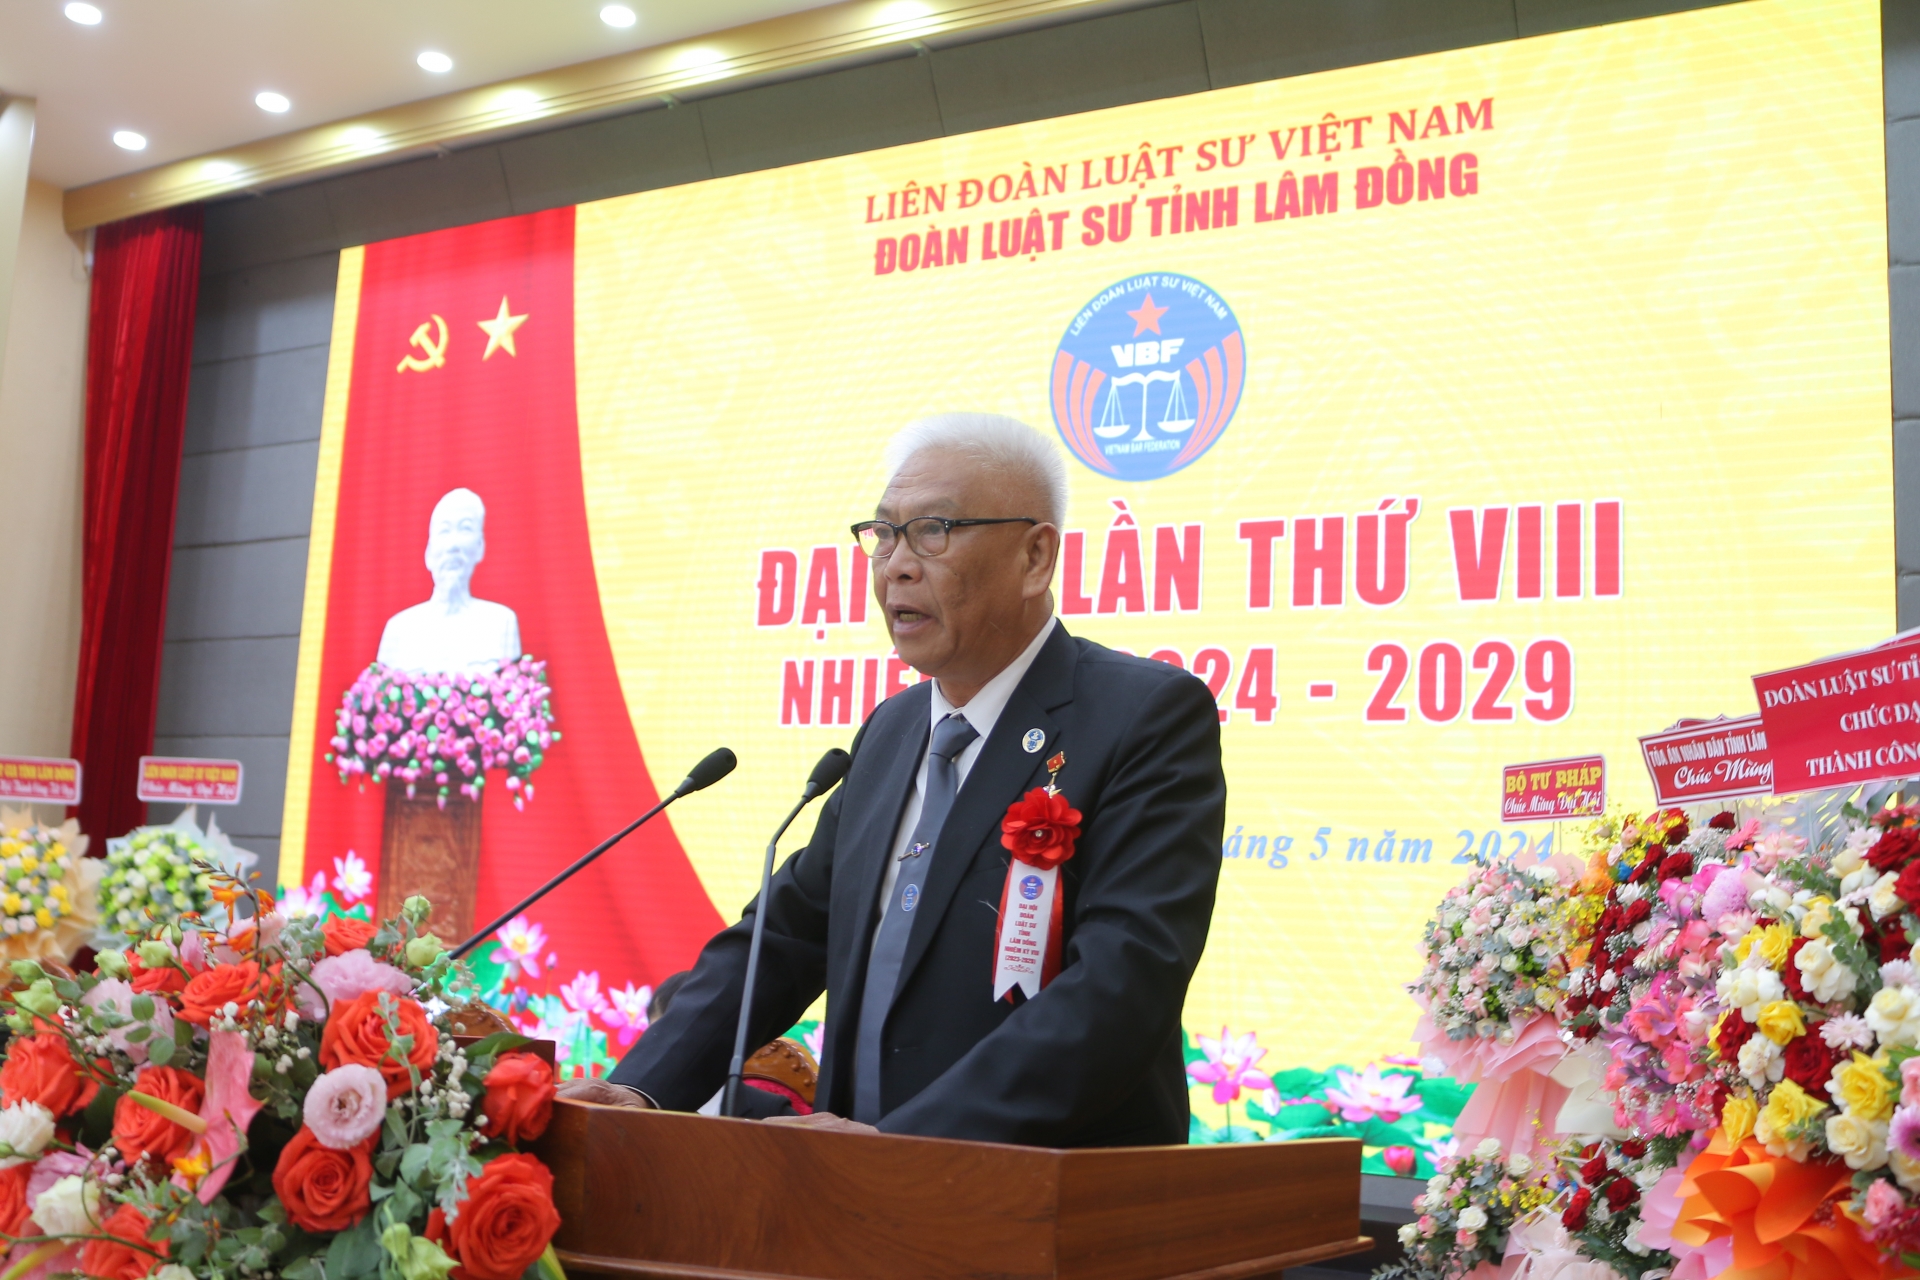 Luật sư Huỳnh Tho tiếp tục được tín nhiệm bầu làm Chủ nhiệm Đoàn Luật sư tỉnh Lâm Đồng 